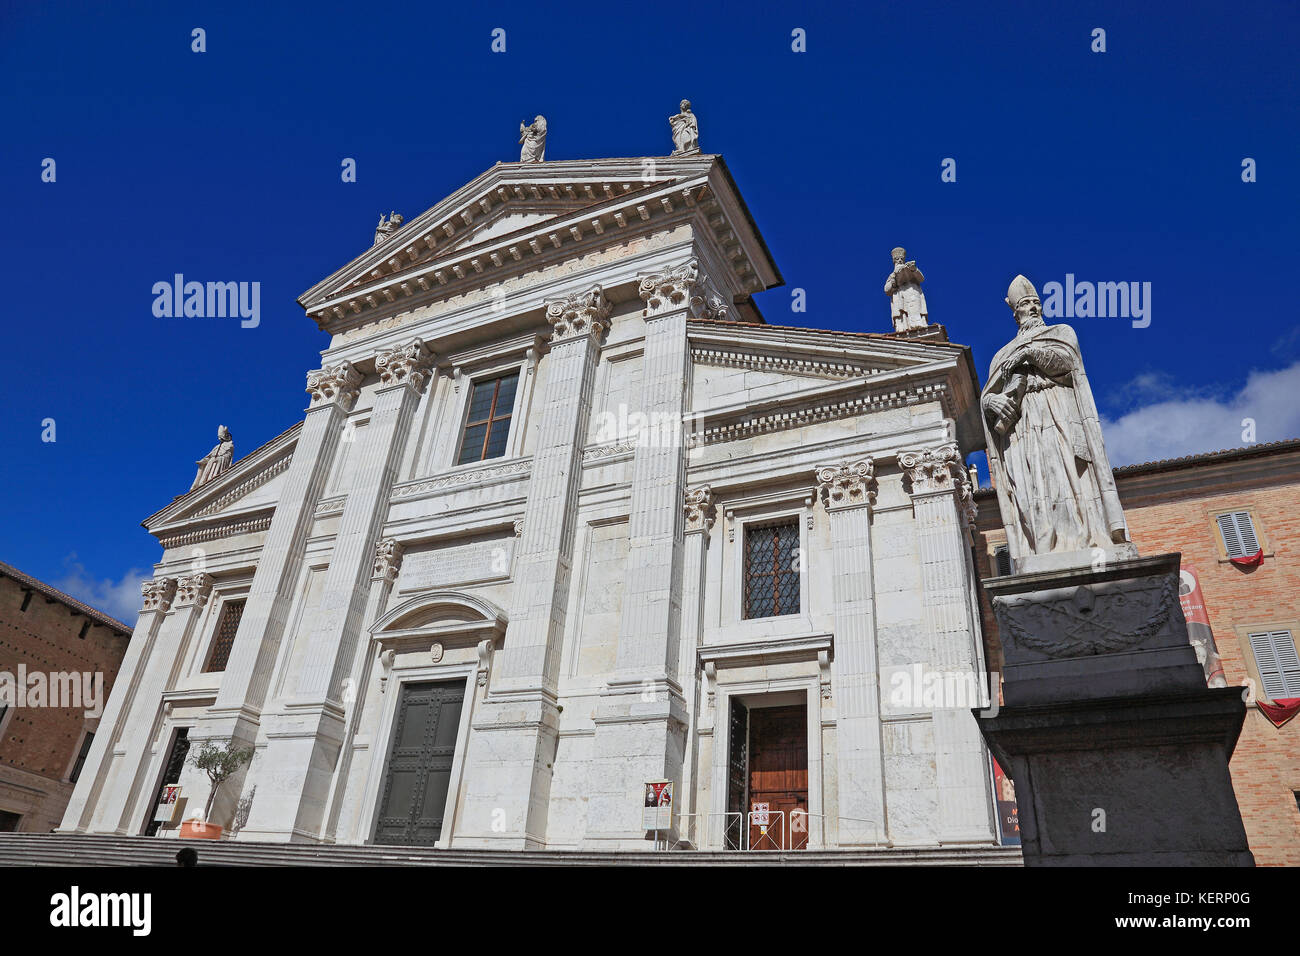 Vista de la catedral, el duomo di Urbino, metropolitana Cattedrale di Santa Maria Assunta duomo, Urbino, marche, Italia Foto de stock